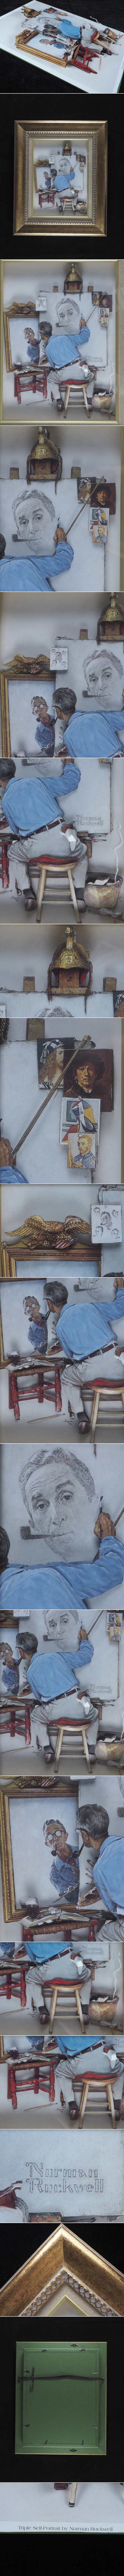 お得大得価bx49_希少 額装 Norman Rockwell ノーマン・ロックウェル 「Triple Self-Portrait」立体細密細工 紙細工 縦48cm 横40cm(検 リトグラフ 石版画、リトグラフ